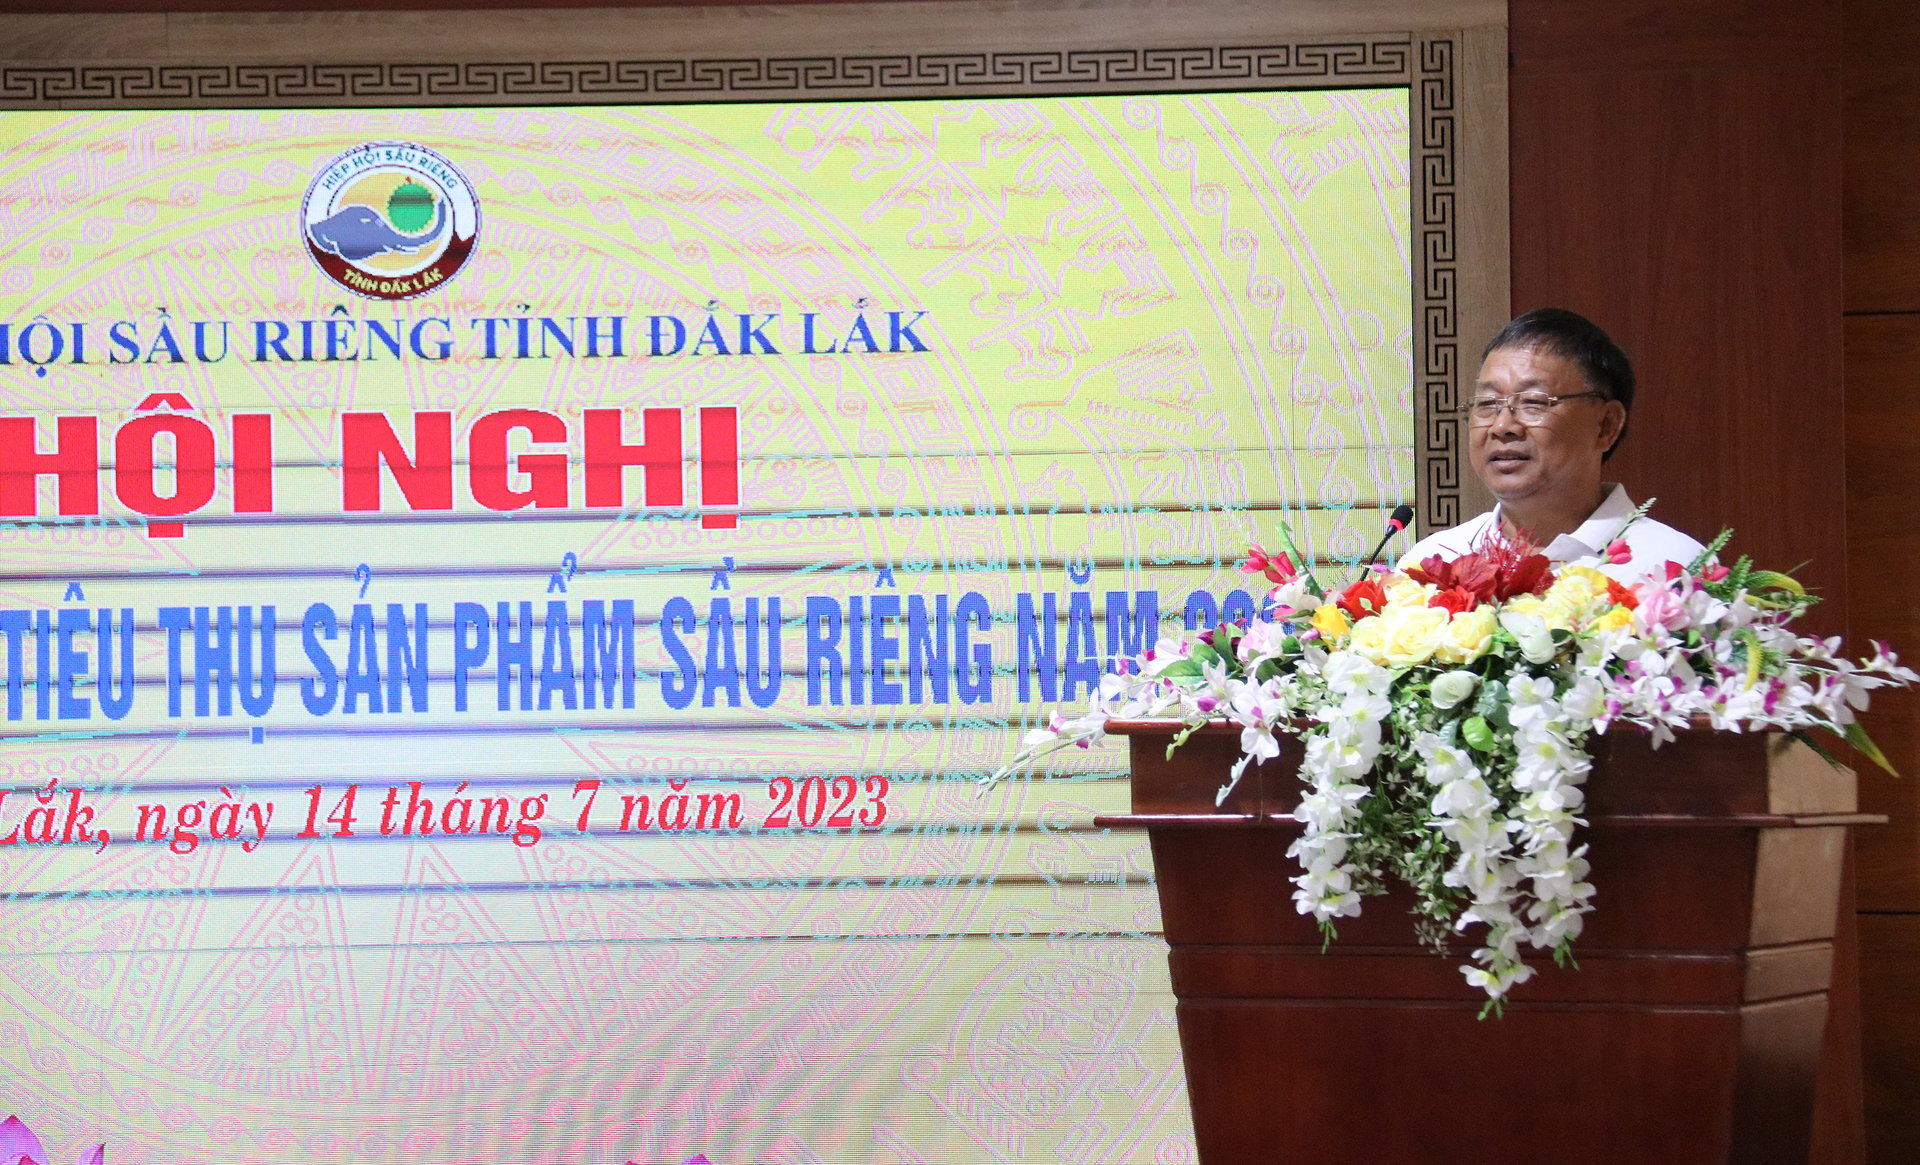 Ông Vũ Đức Côn, Phó Giám đốc Sở NN-PTNT kiêm Chủ tịch Hiệp hội Sầu riêng Đắk Lắk phát biểu tại hội nghị. Ảnh: Quang Yên.